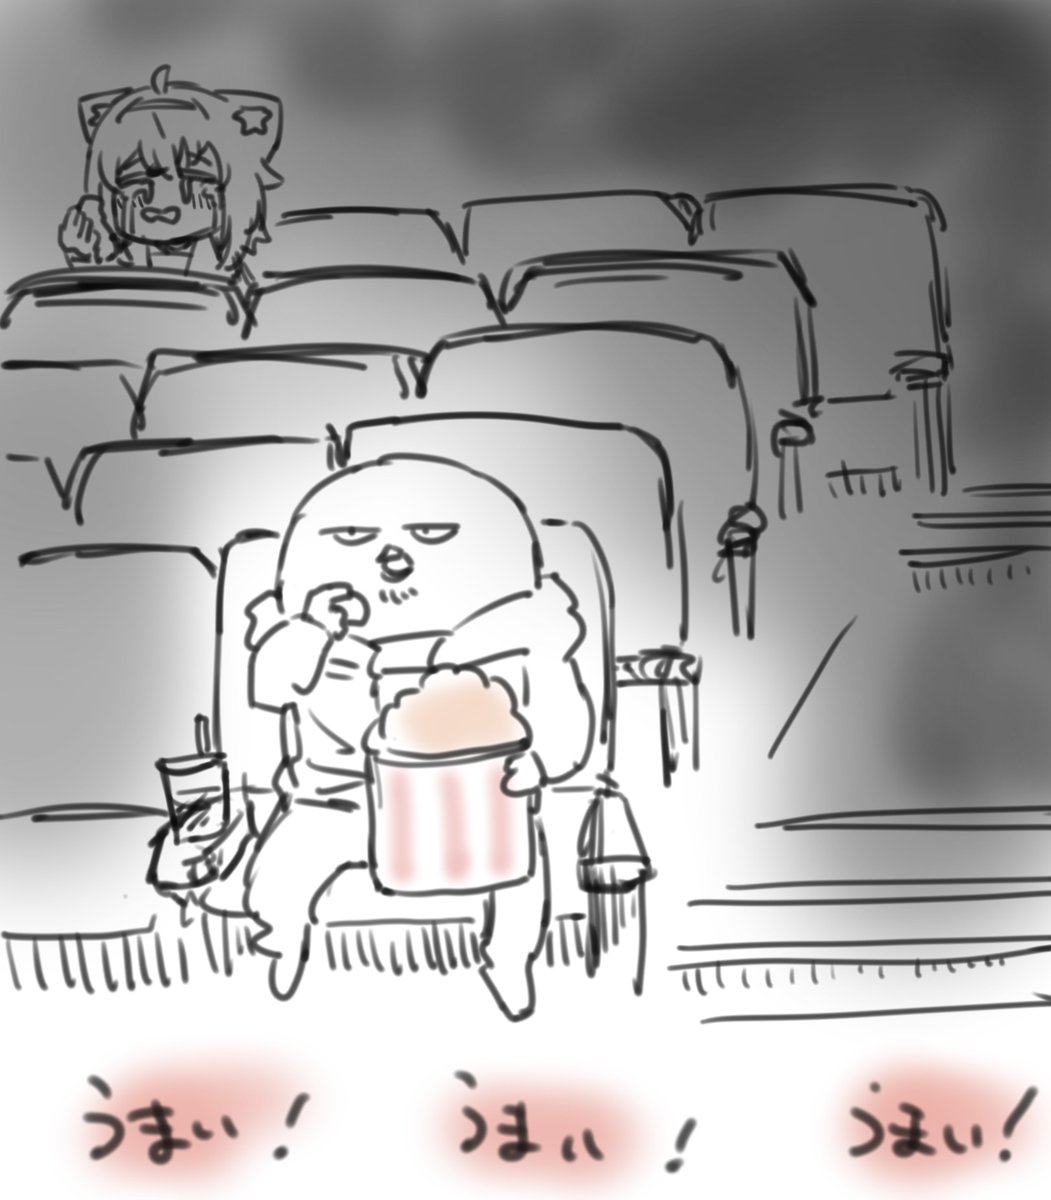 映画館好きでよく行きます
キャラメルしか勝たん
#生おかゆ 